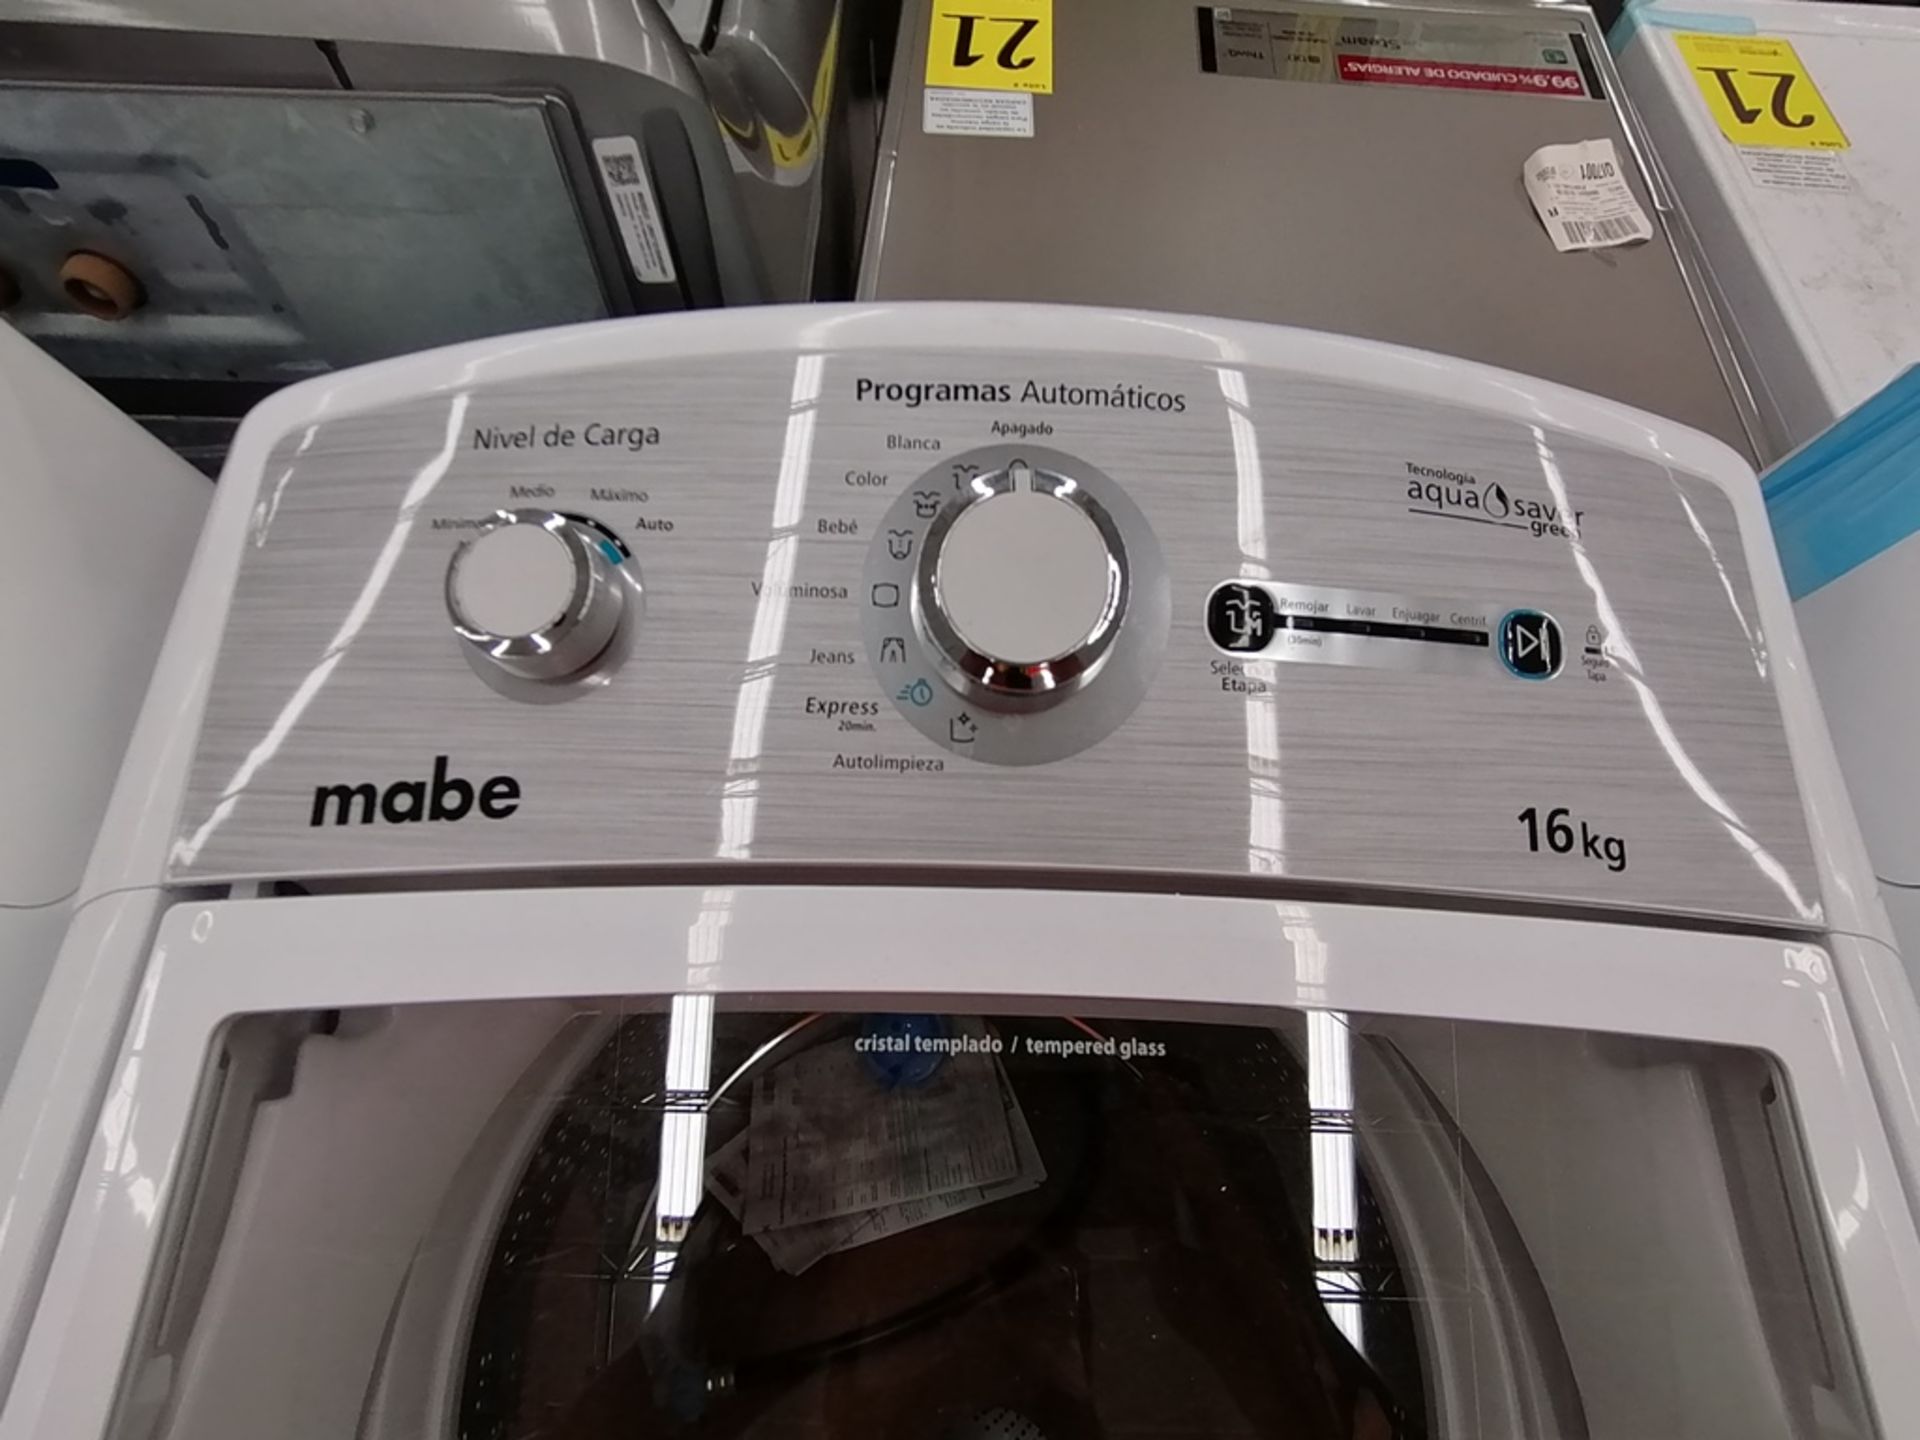 Lote de 3 lavadoras contiene: 1 Lavadora de 16KG, Marca Mabe, Modelo LMA46102VBAB02, Serie 2108S802 - Image 27 of 29